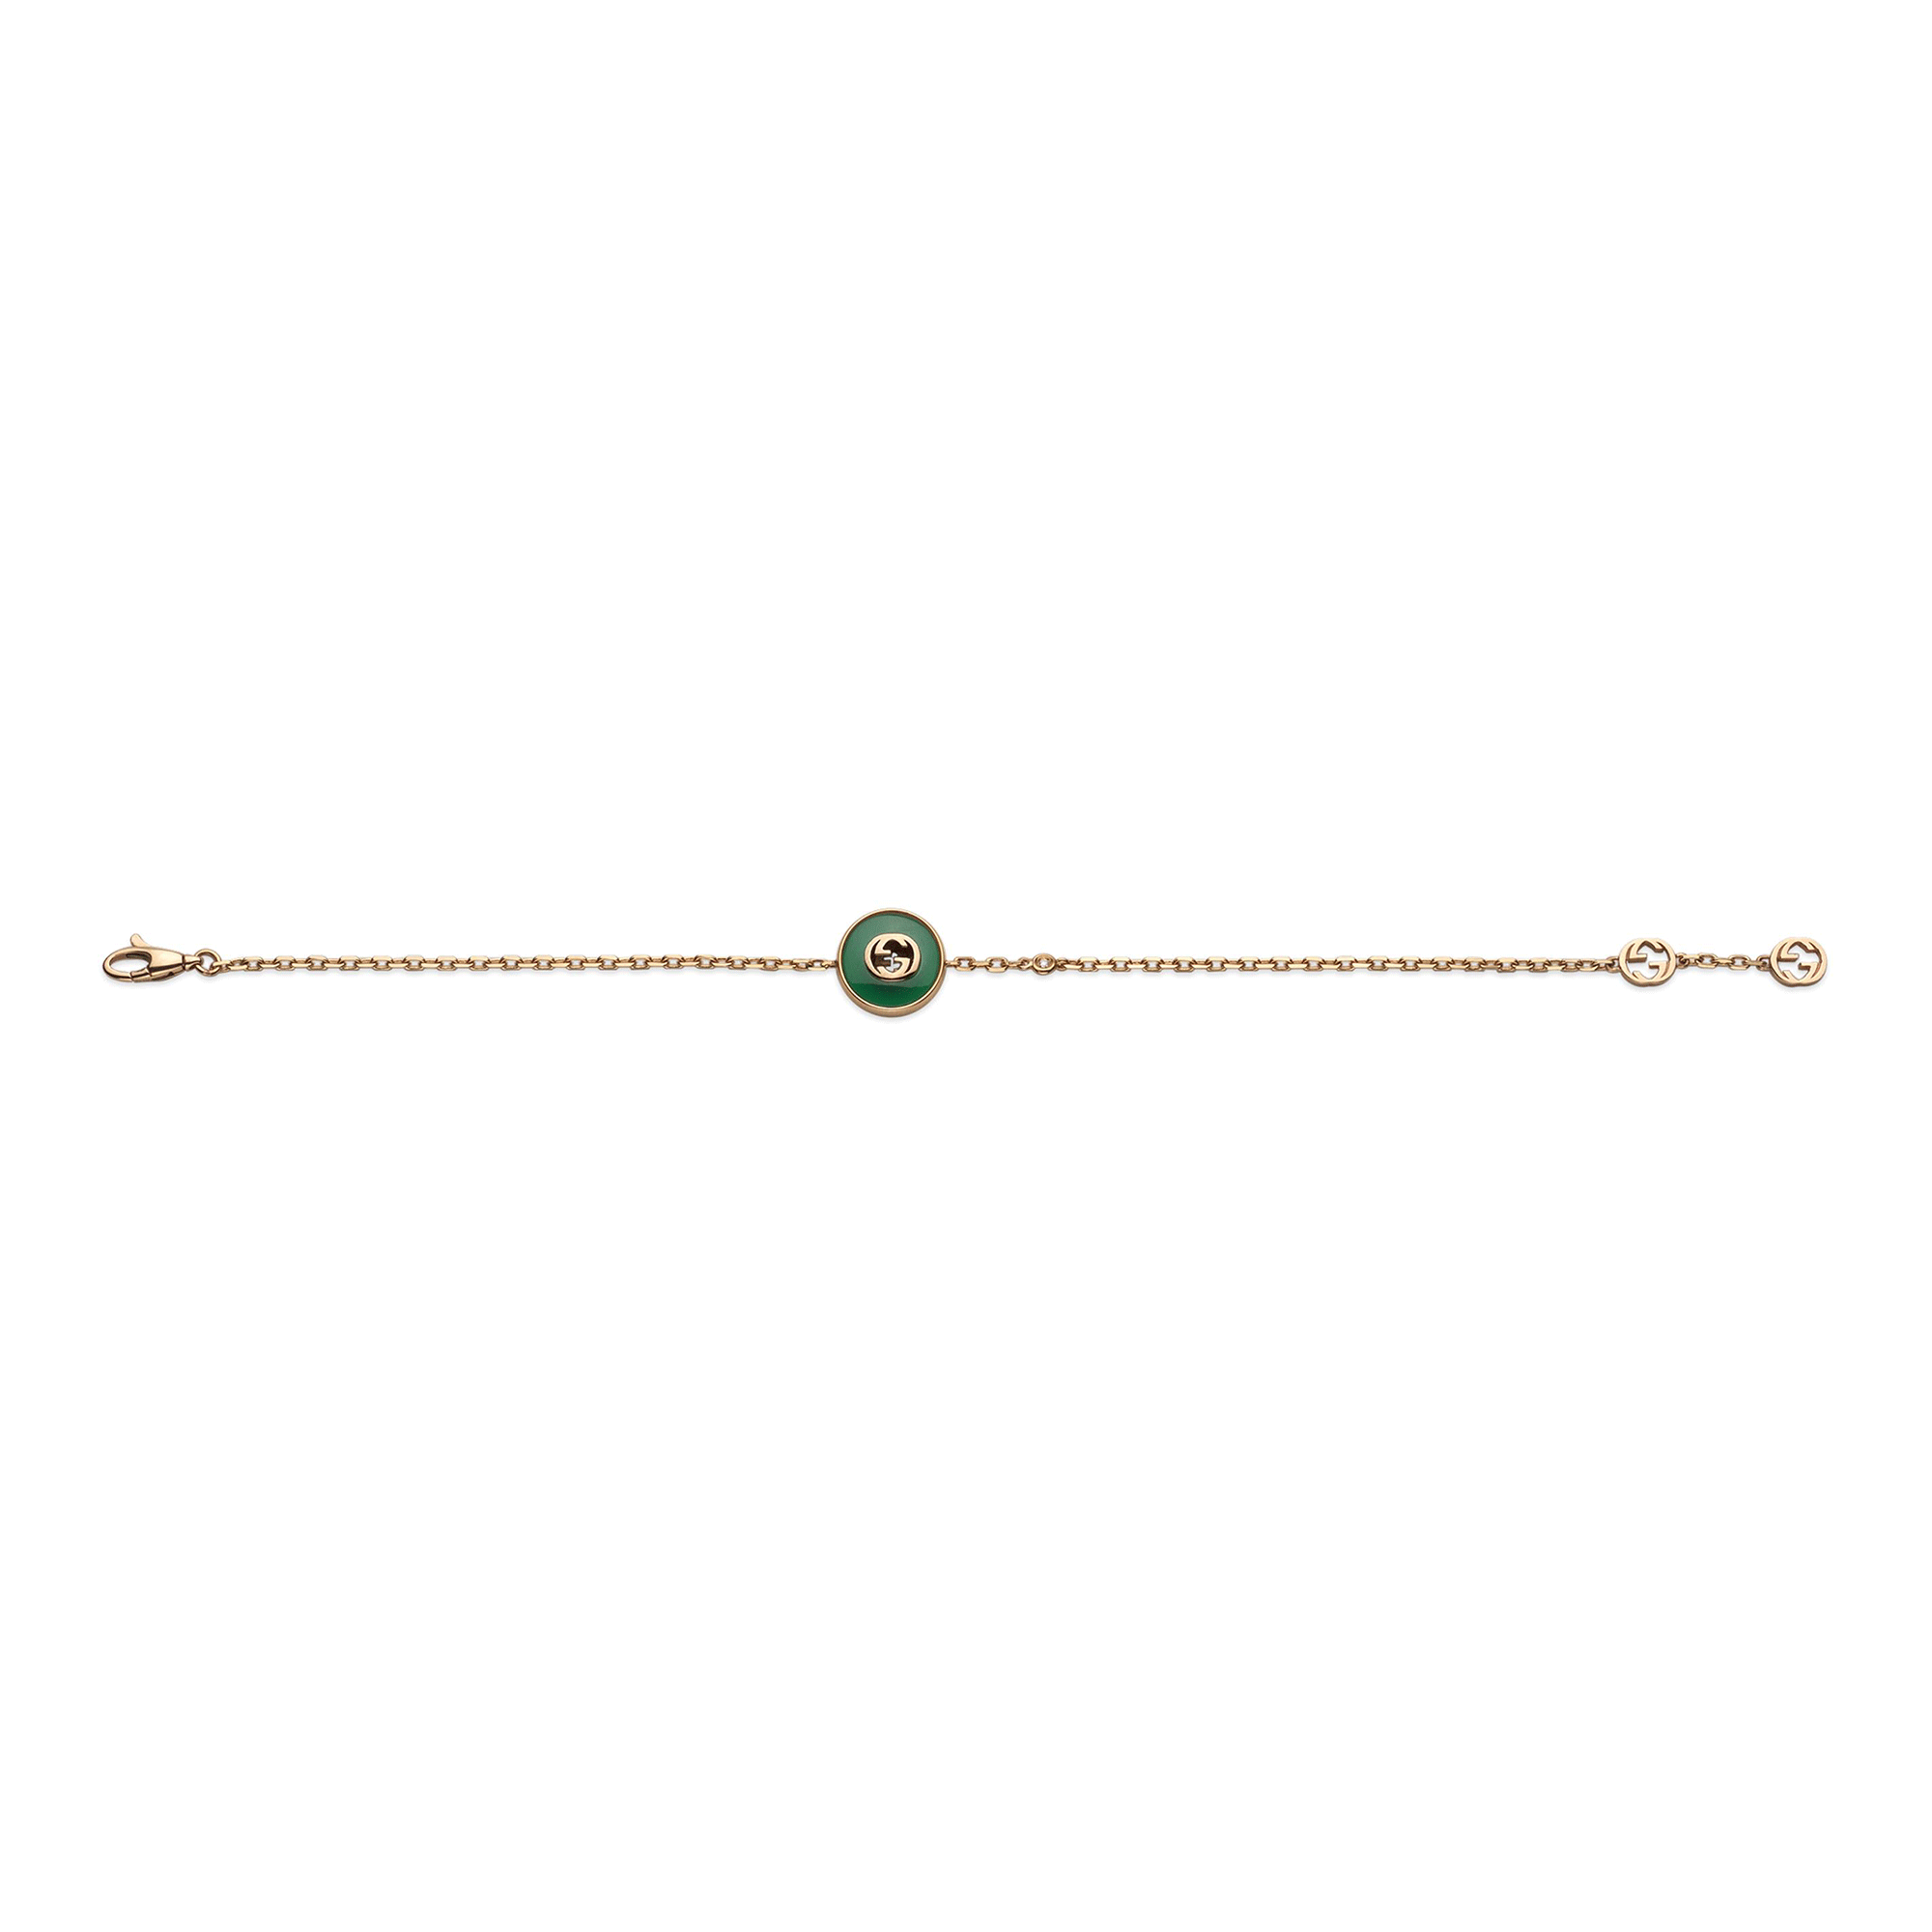 Interlocking 18ct Rose Gold Green Agate Bracelet